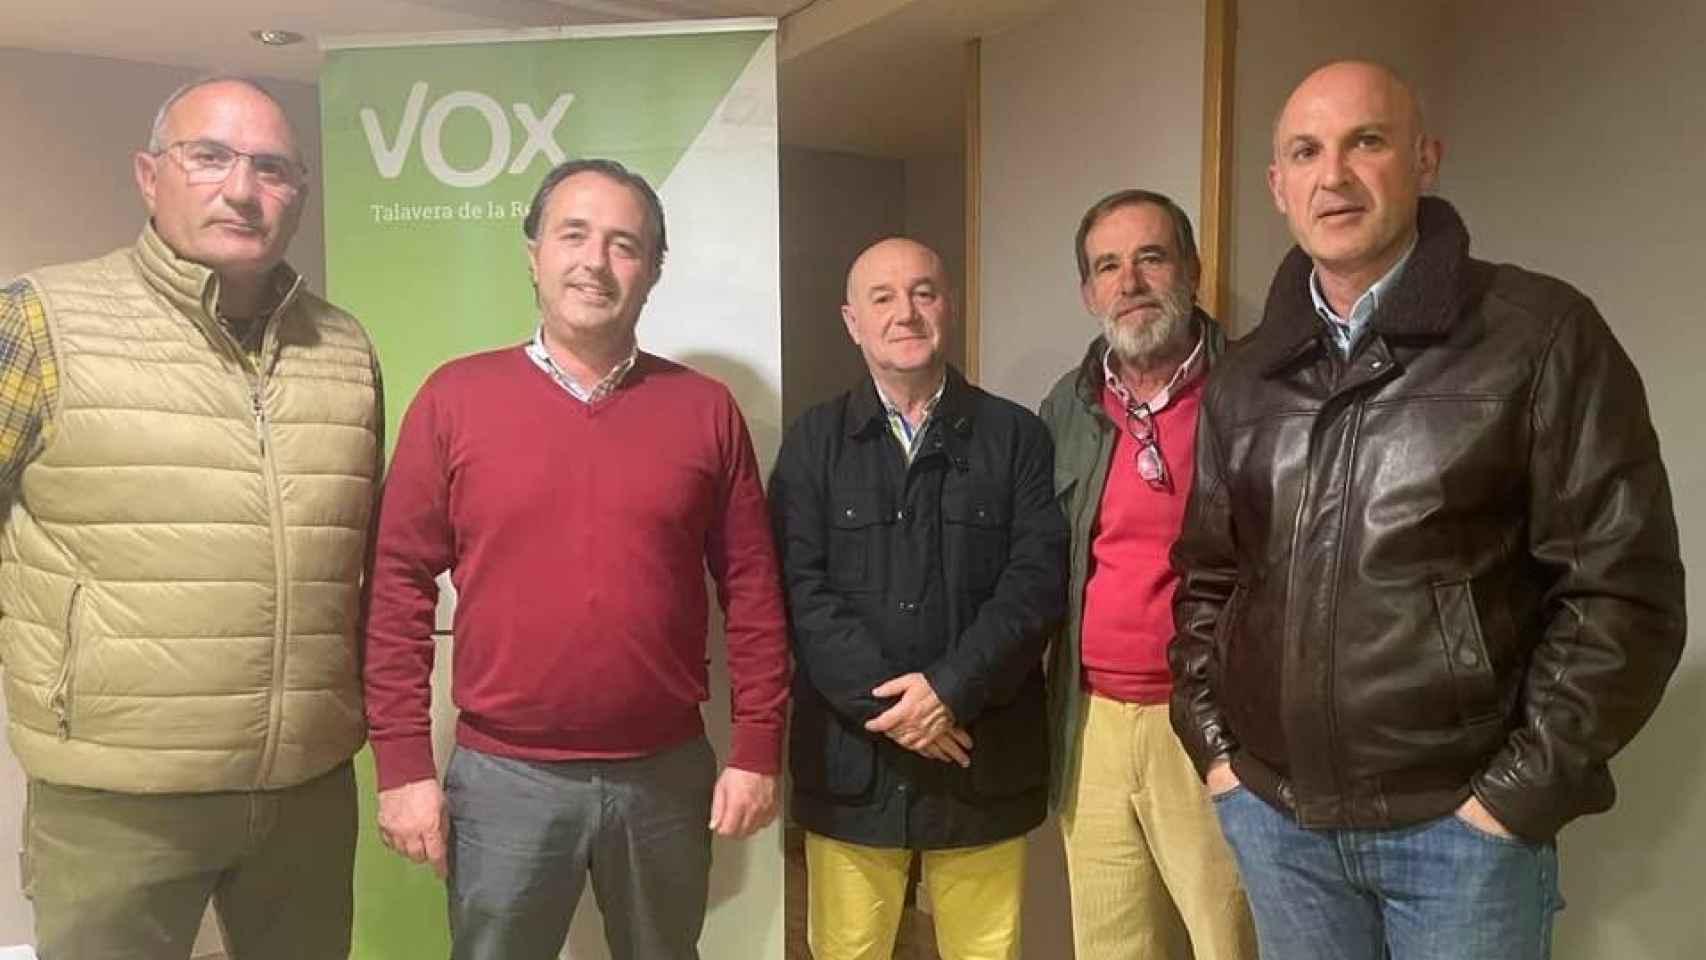 En el centro, Juan Bautista Rocha del Pino, el que iba ser candidato a la Alcaldía en Los Navalmorales junto a David Moreno y otros miembros de Vox.